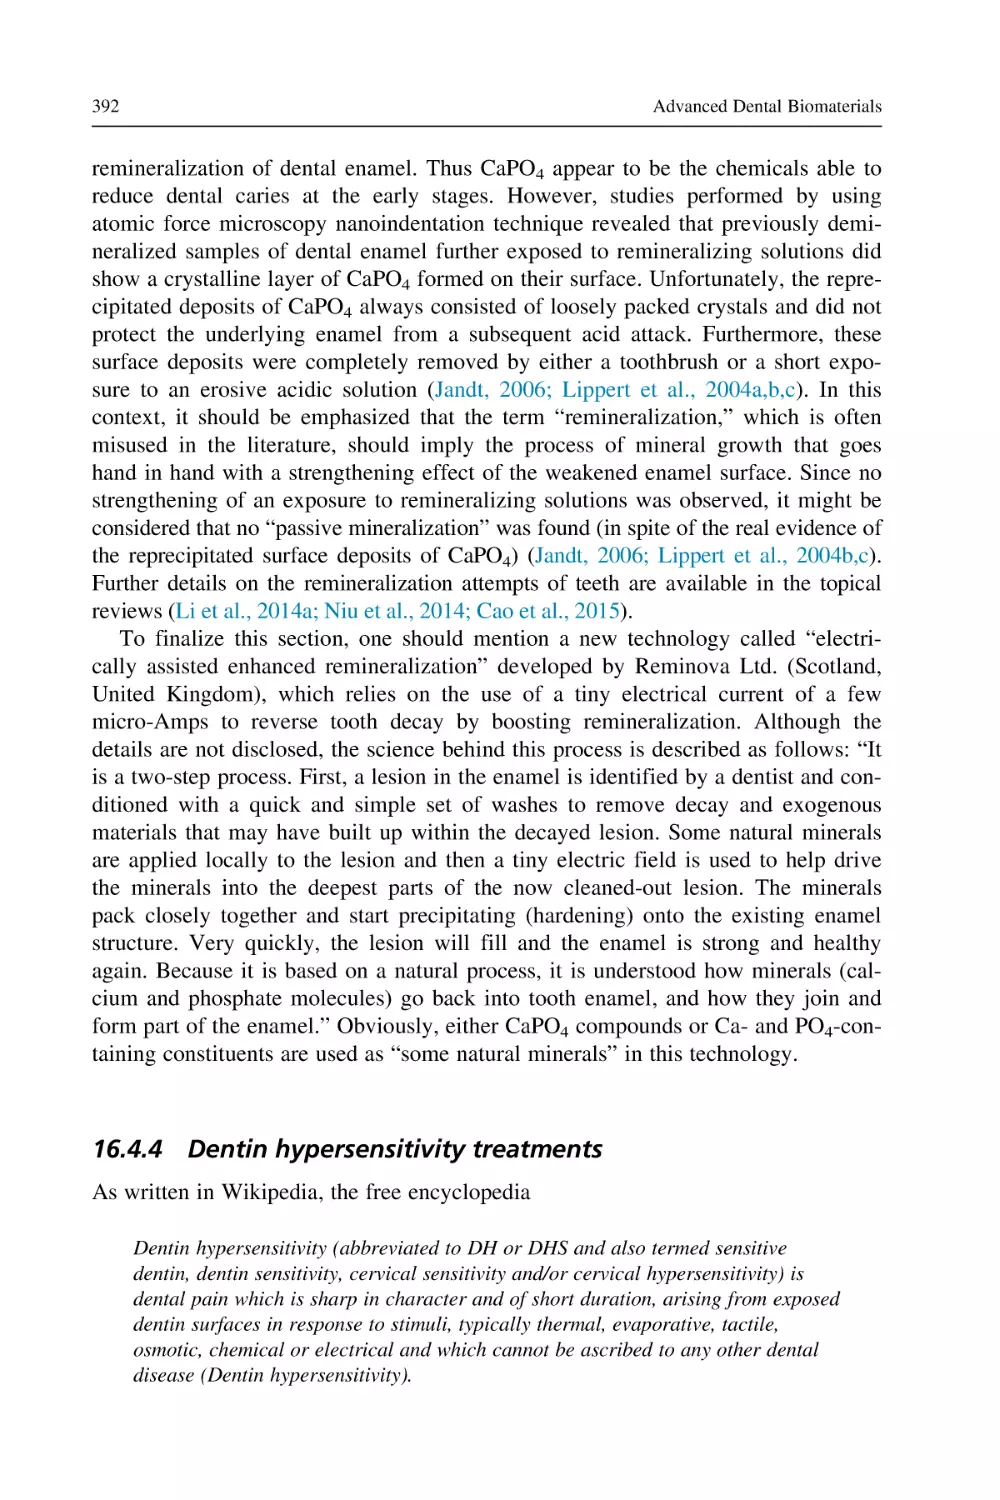 16.4.4 Dentin hypersensitivity treatments